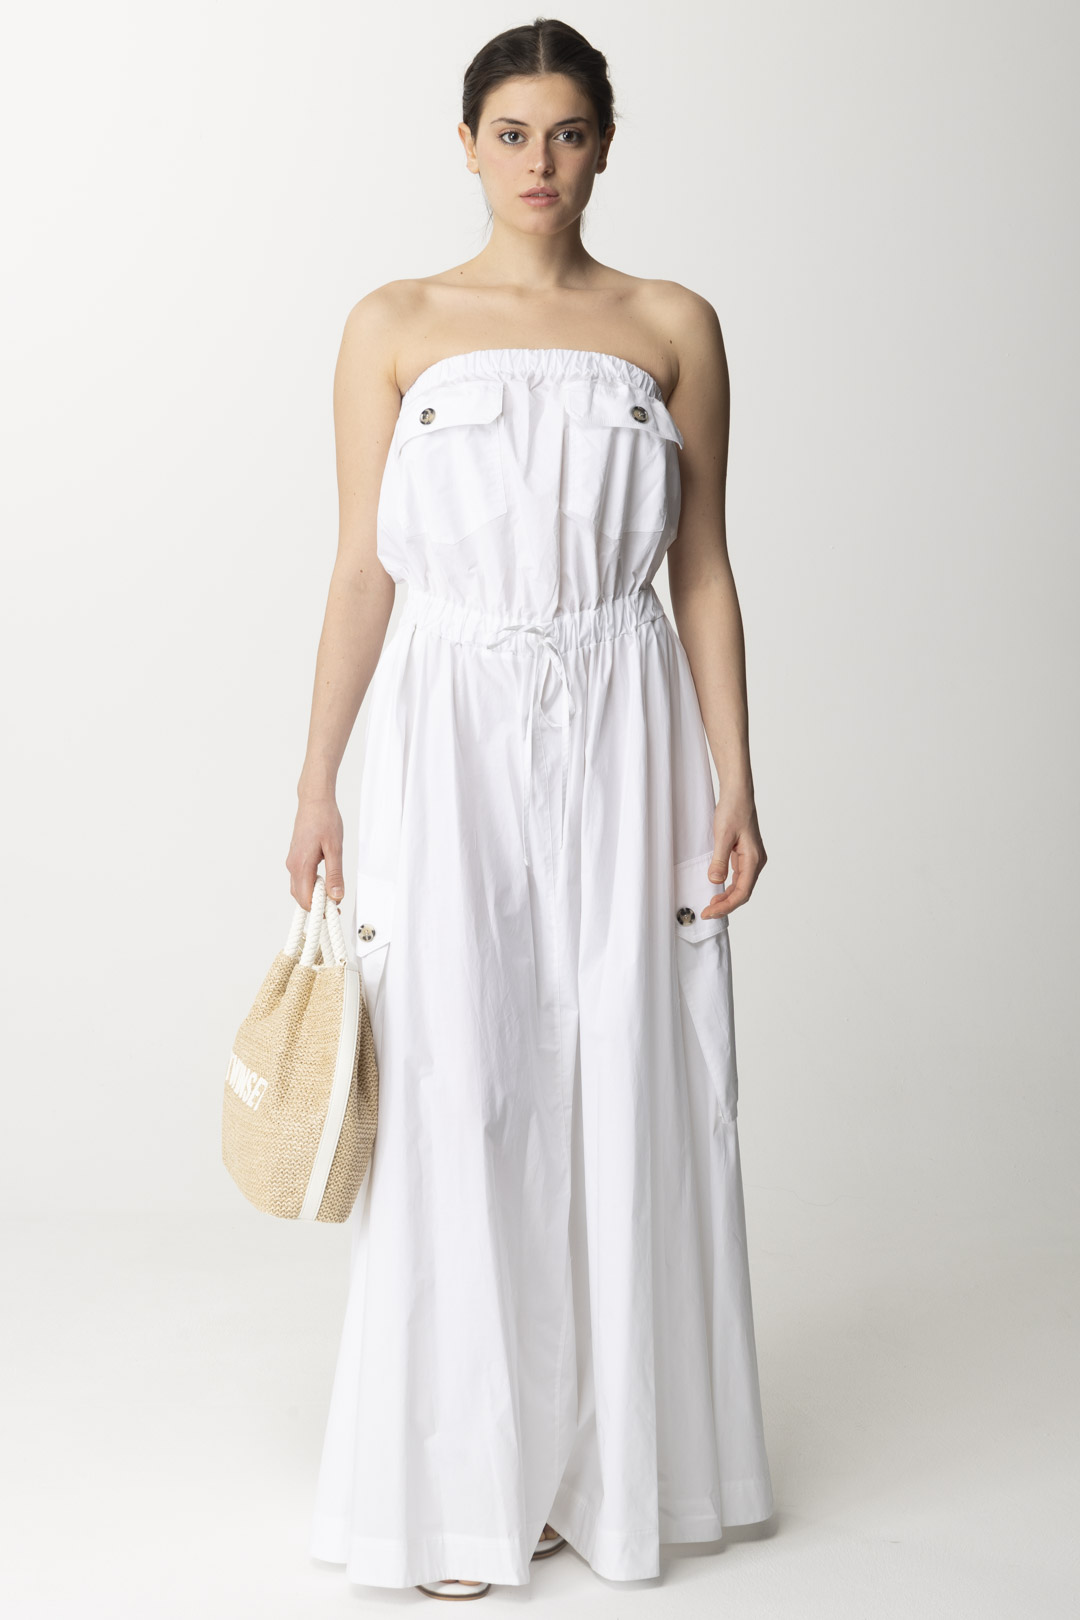 Podgląd: Aniye By Długa sukienka Cory z kieszeniami WHITE